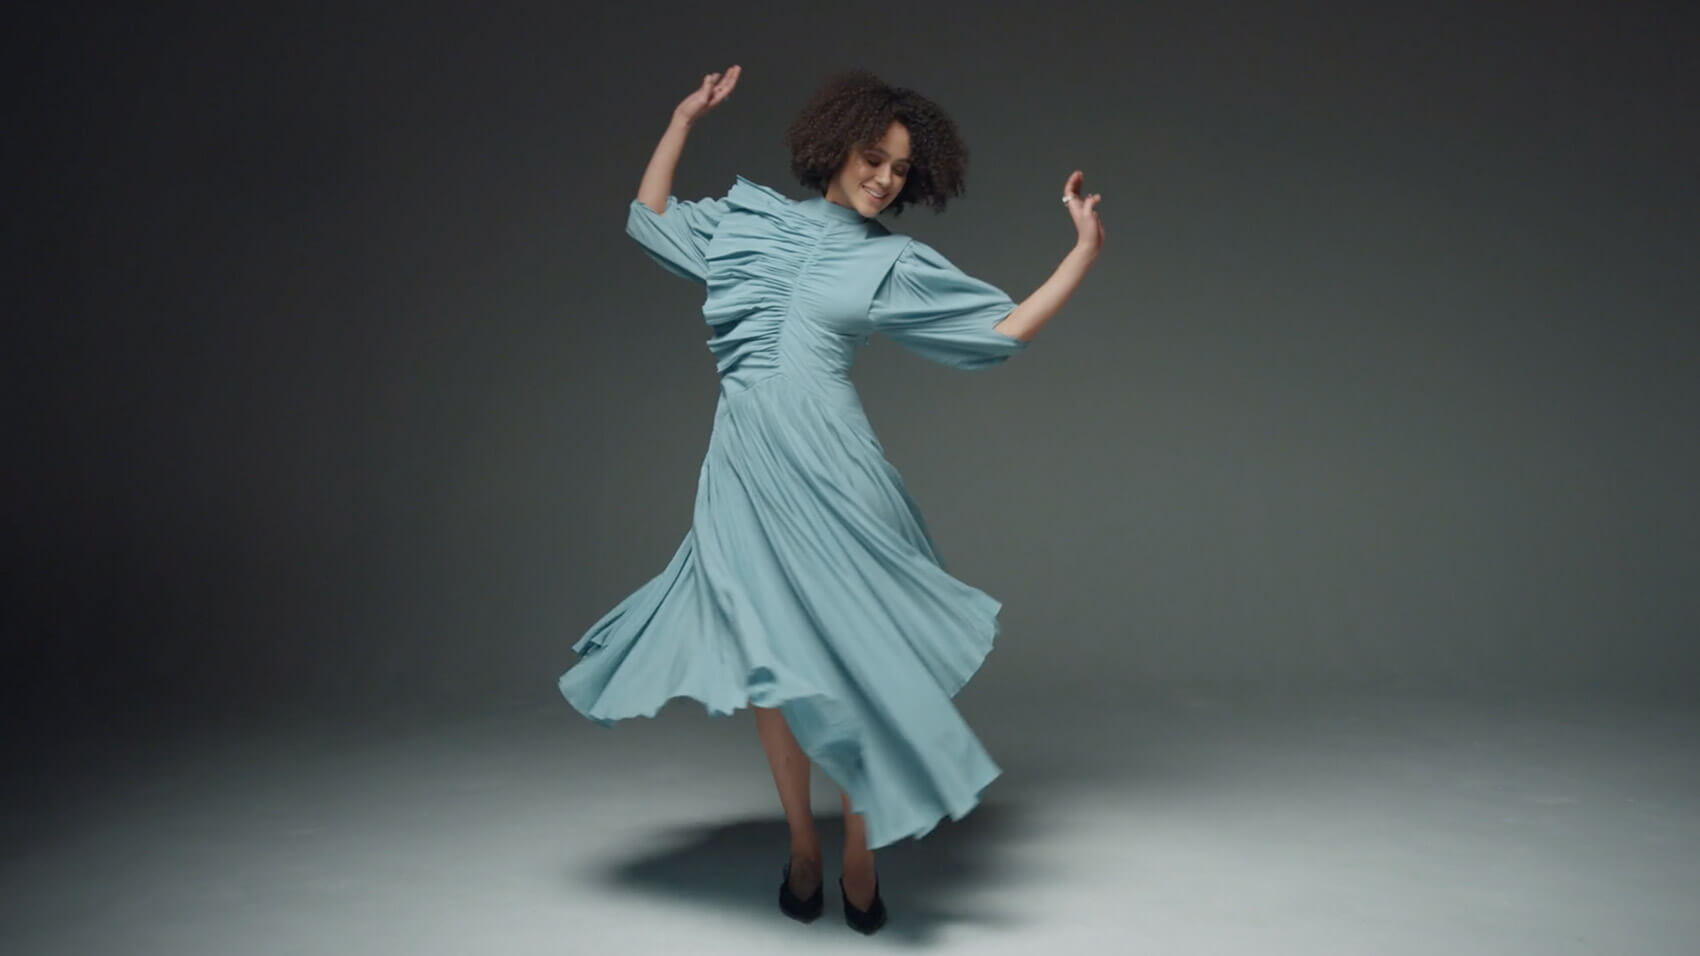 Still from Harper's Bazaar video shoot featuring Nathalie Emmanuel, by Rise Media